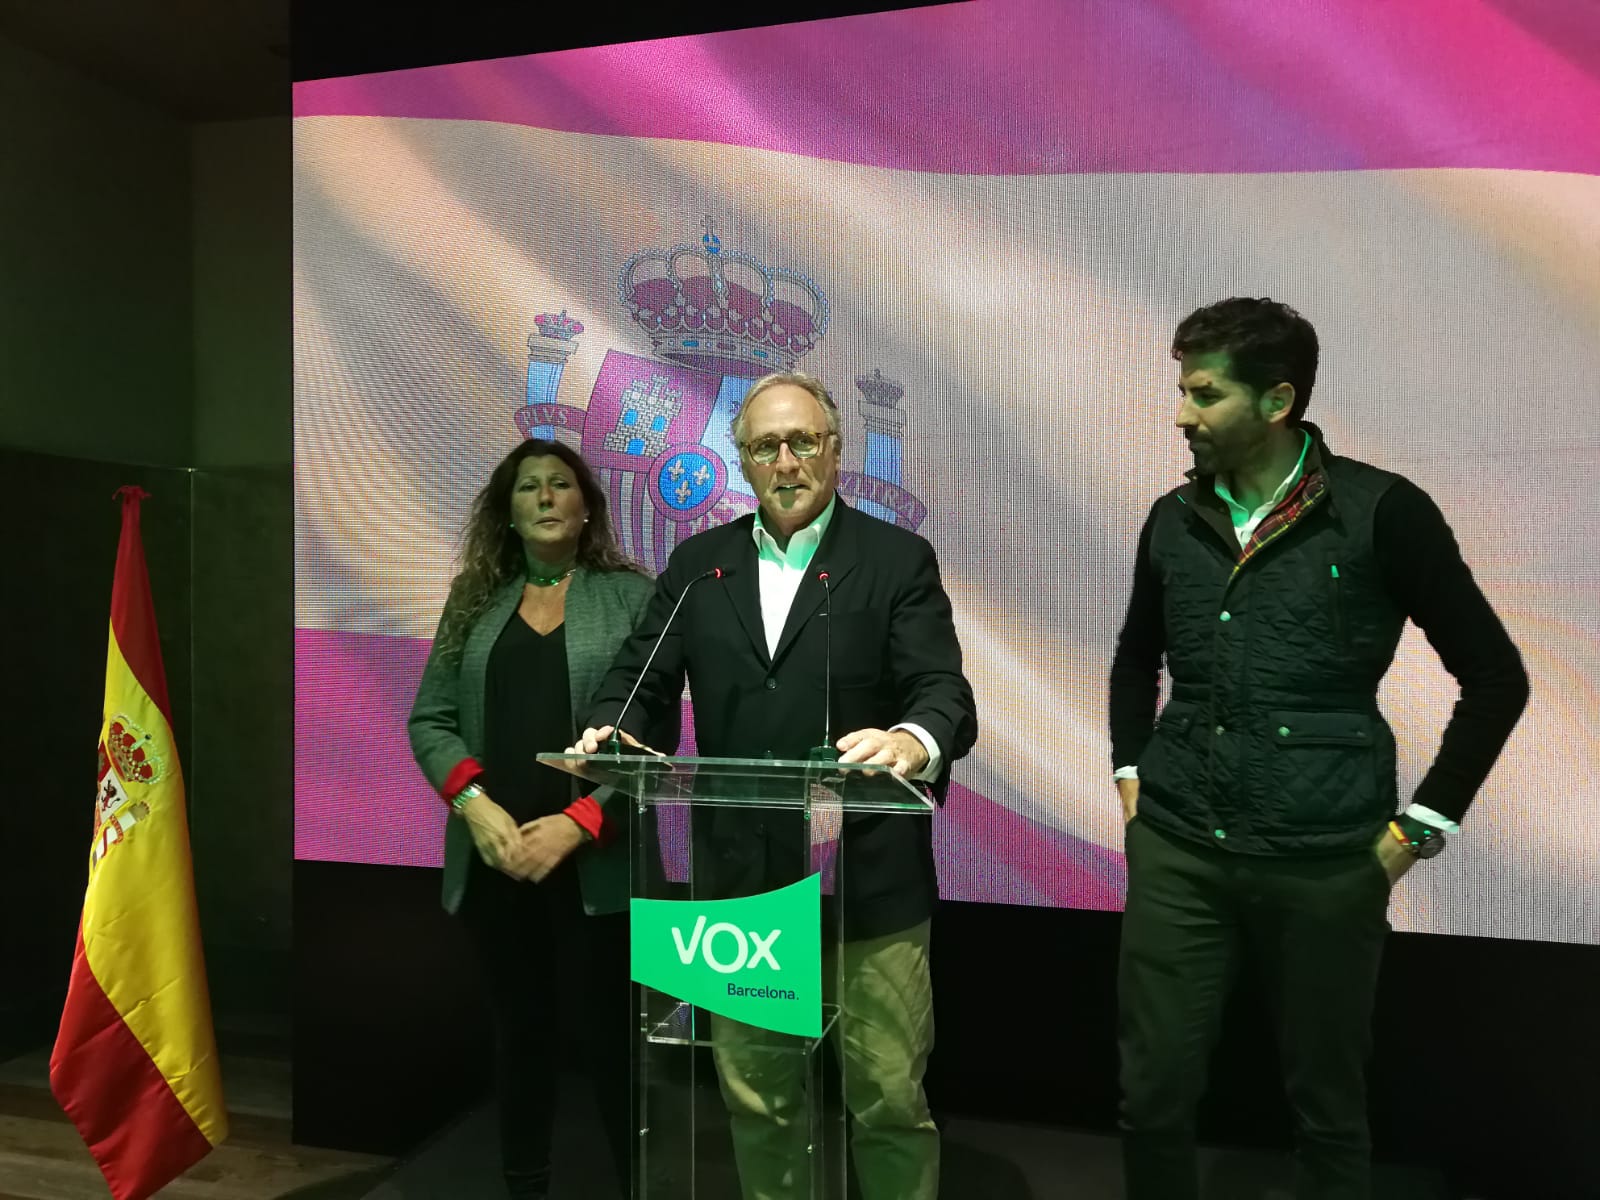 ¿Quién es segundo diputado de Vox en Catalunya?